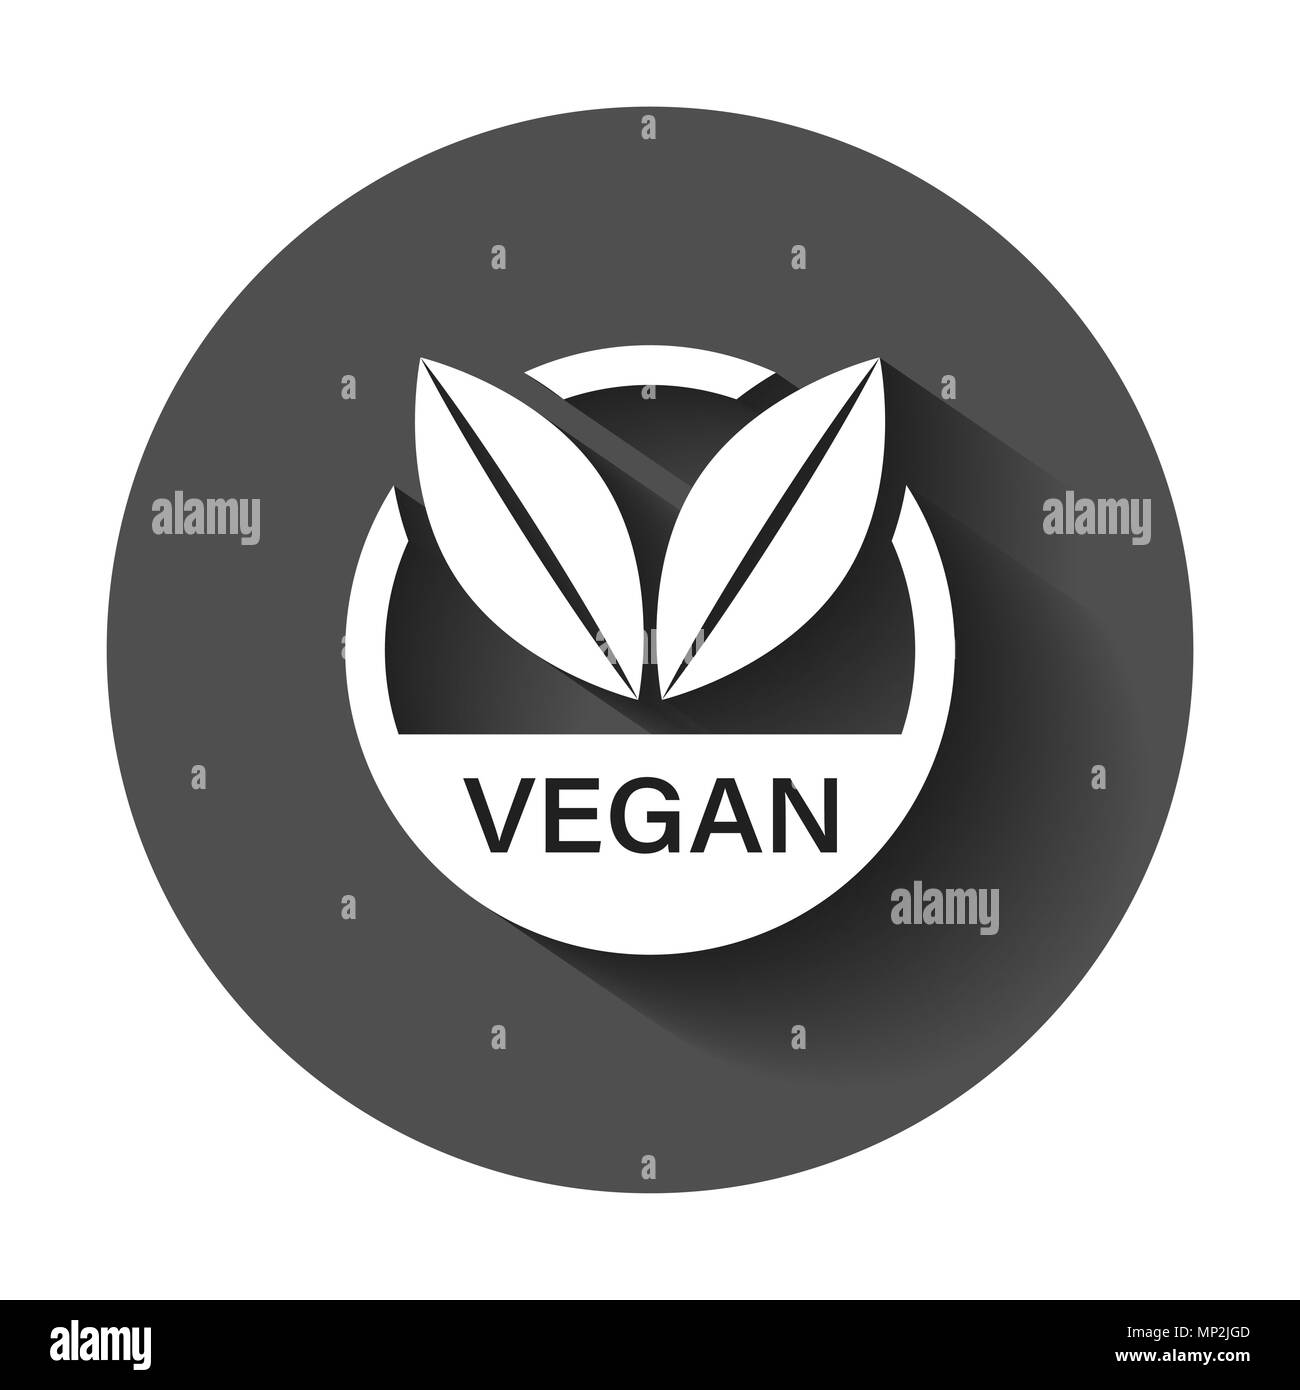 Etichetta vegano badge icone vettoriali in stile appartamento. Timbro vegetariano illustrazione con lunga ombra. Eco alimenti naturali nozione. Illustrazione Vettoriale